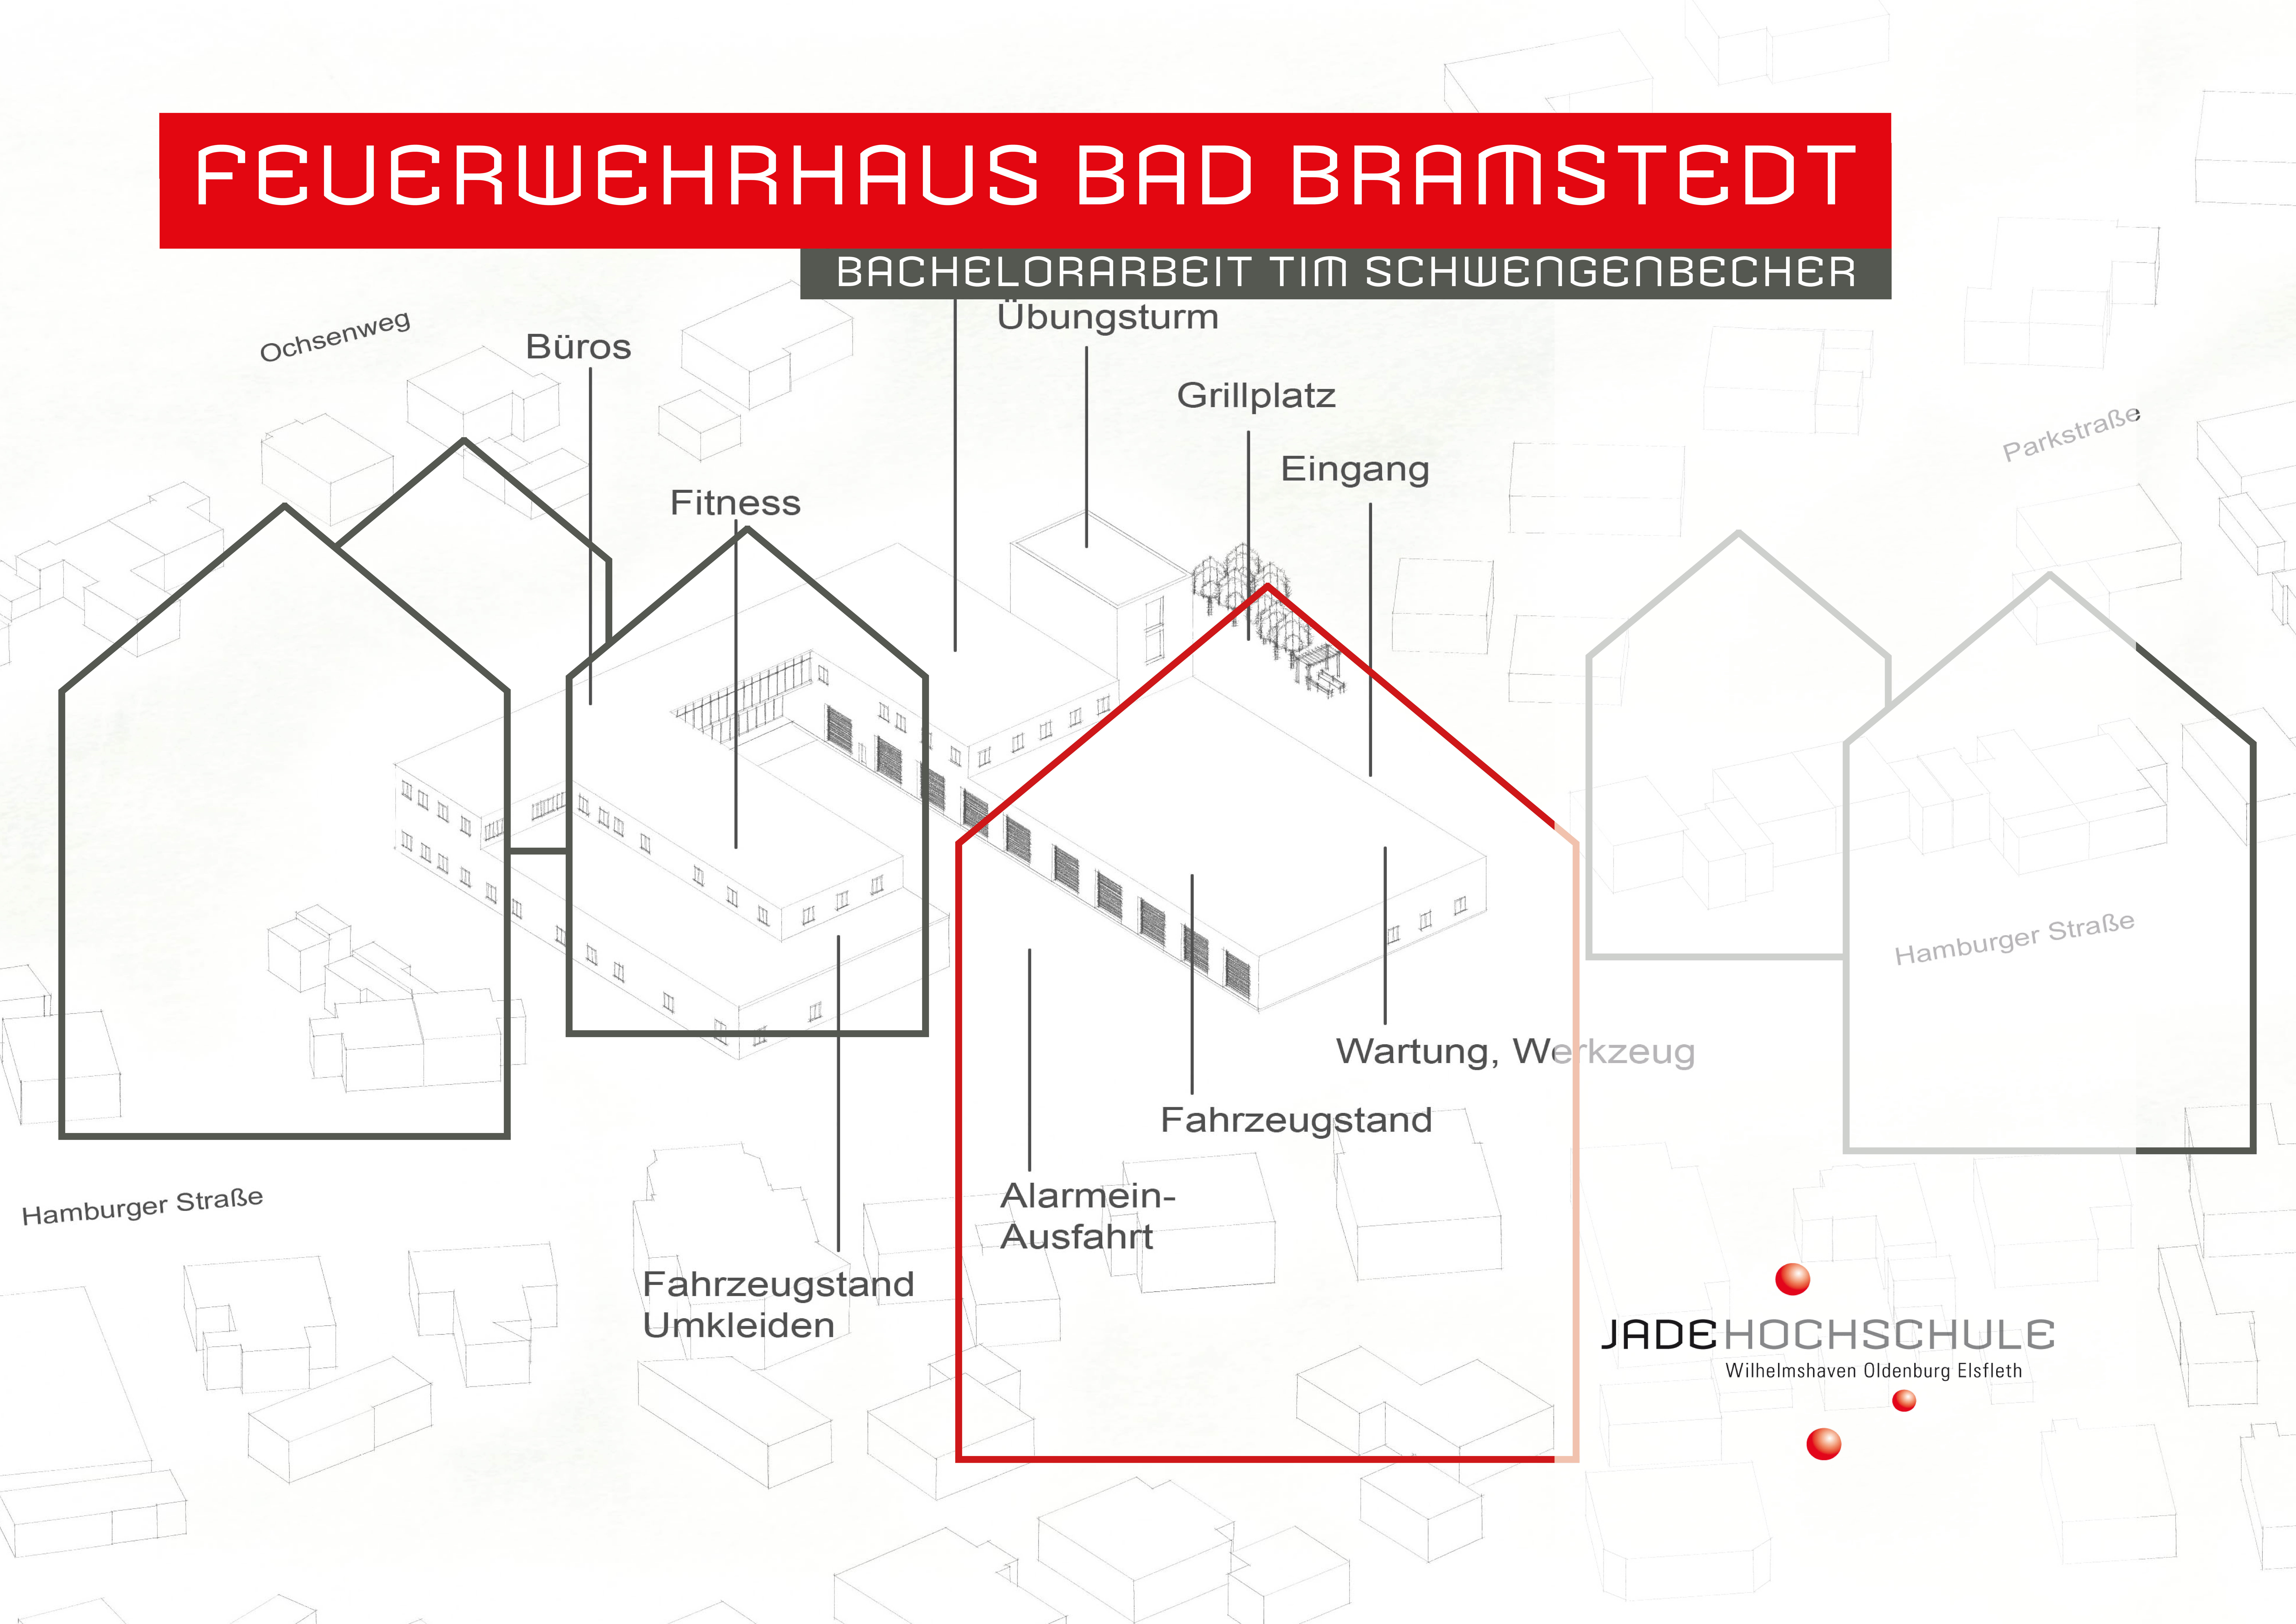 Bachelorarbeit Neubau Feuerwehrhaus Bad Bramstedt: Tim Schwengenbecher